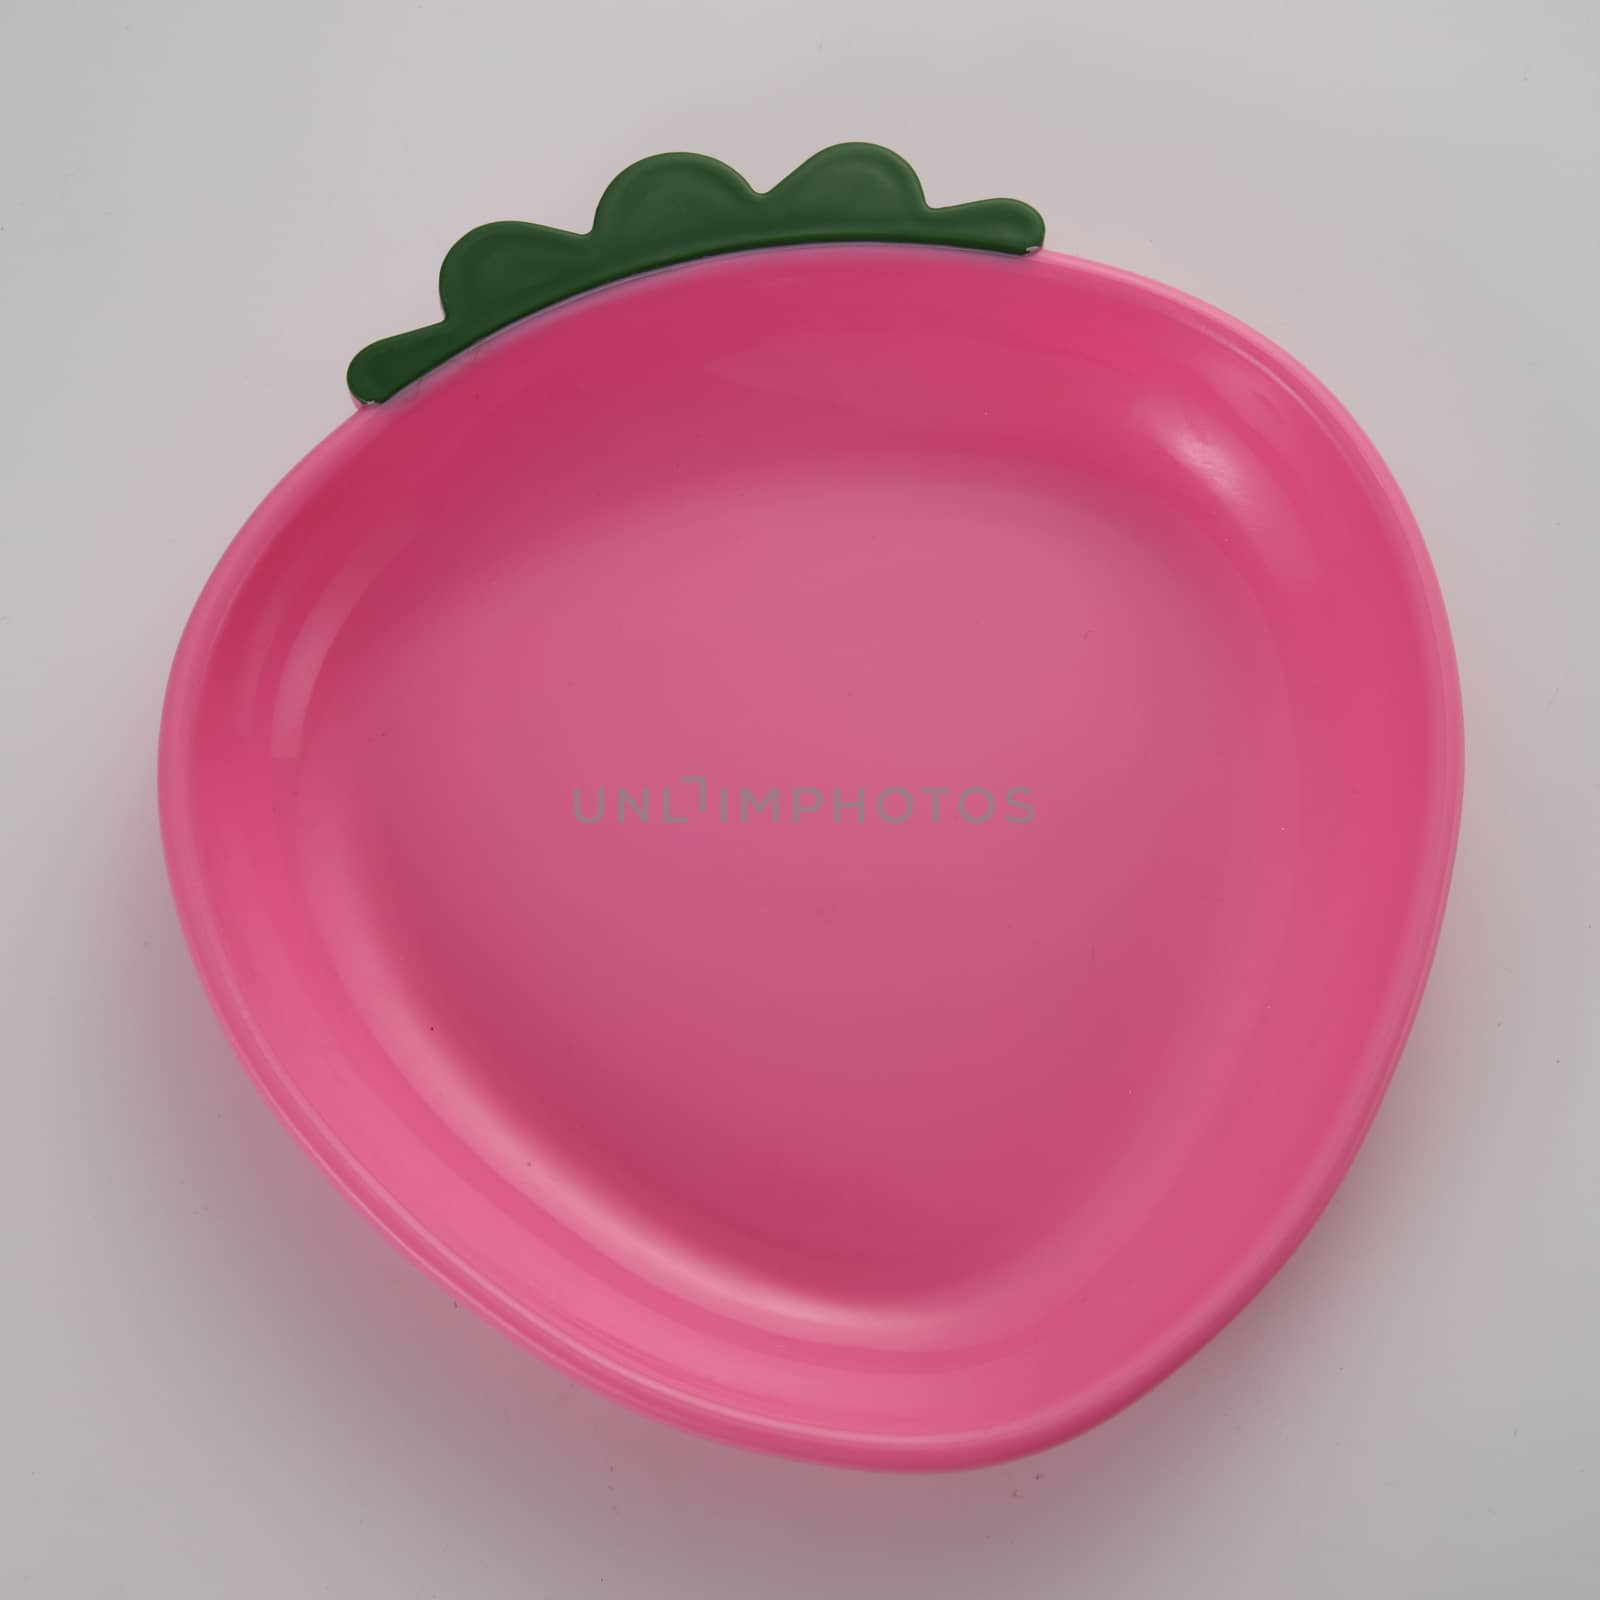 child's plate by eskaylim